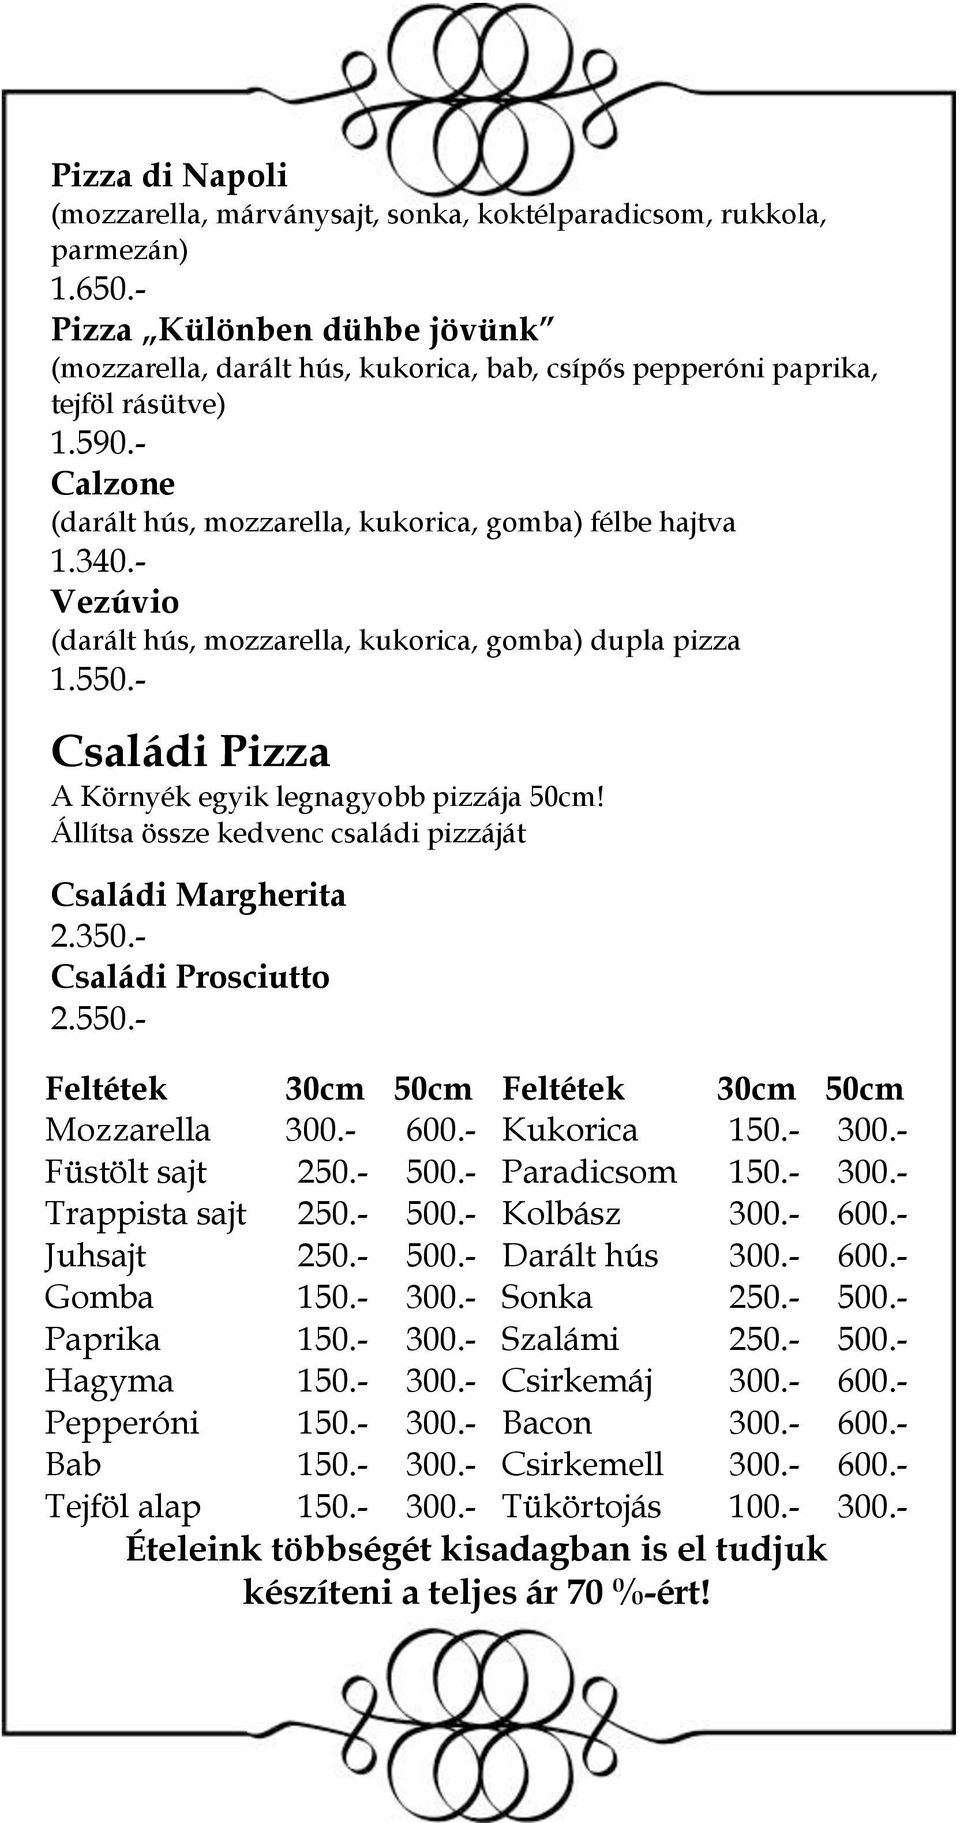 - Calzone (darált hús, mozzarella, kukorica, gomba) félbe hajtva Vezúvio (darált hús, mozzarella, kukorica, gomba) dupla pizza 1.550.- Családi Pizza A Környék egyik legnagyobb pizzája 50cm!